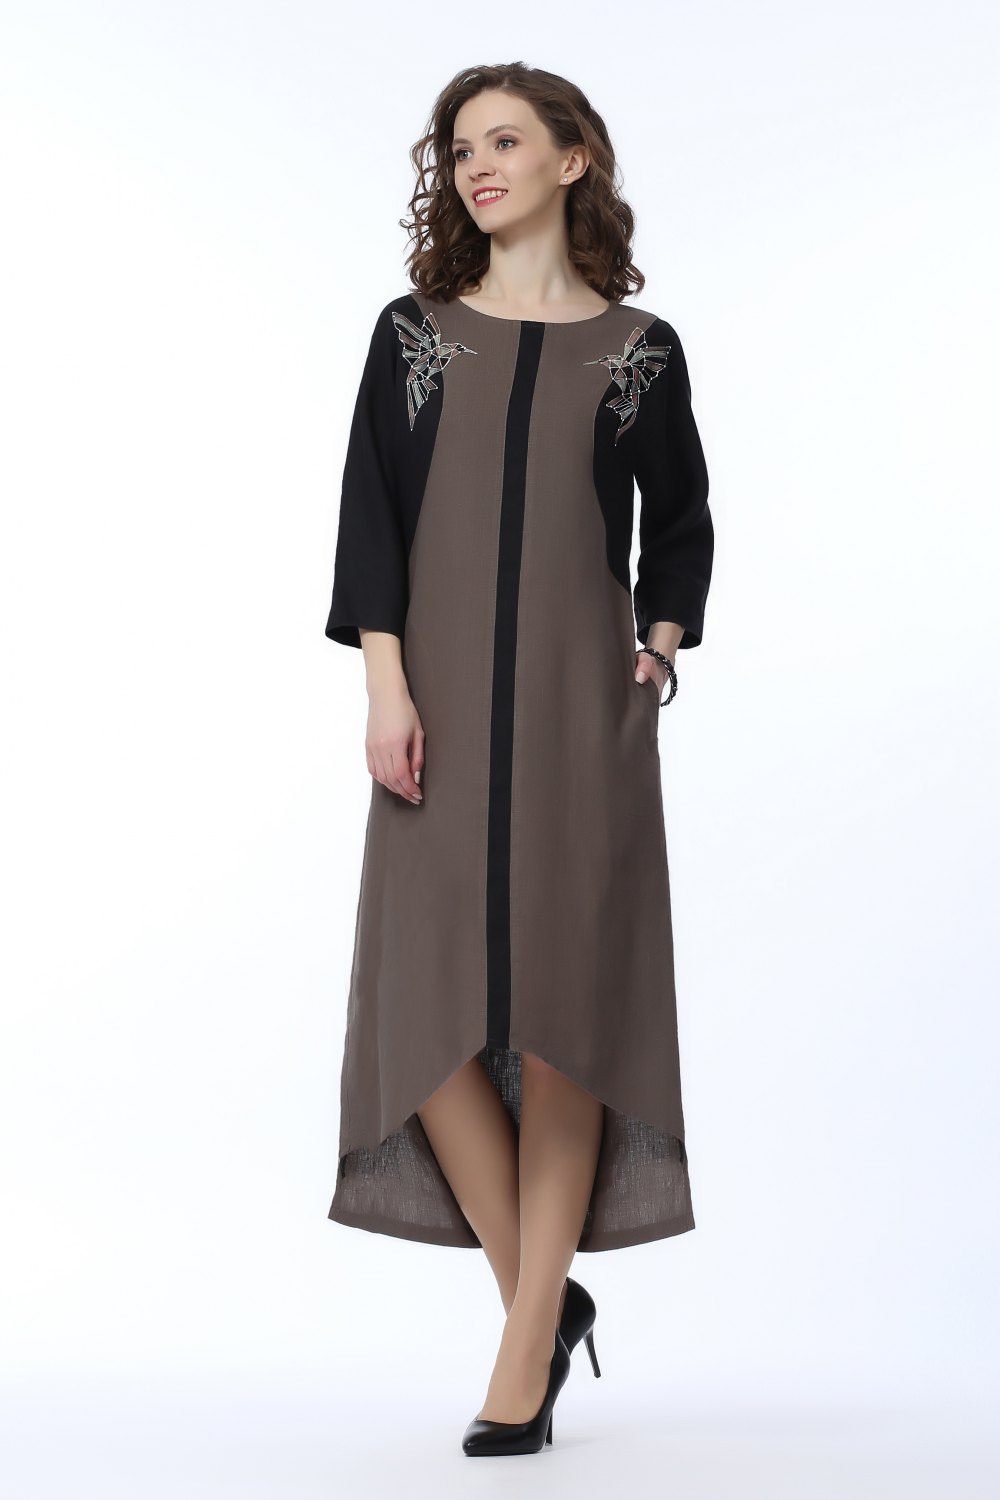 Платье женское "Ивет" с асимметричным низом модель 319/1 серо-коричневое